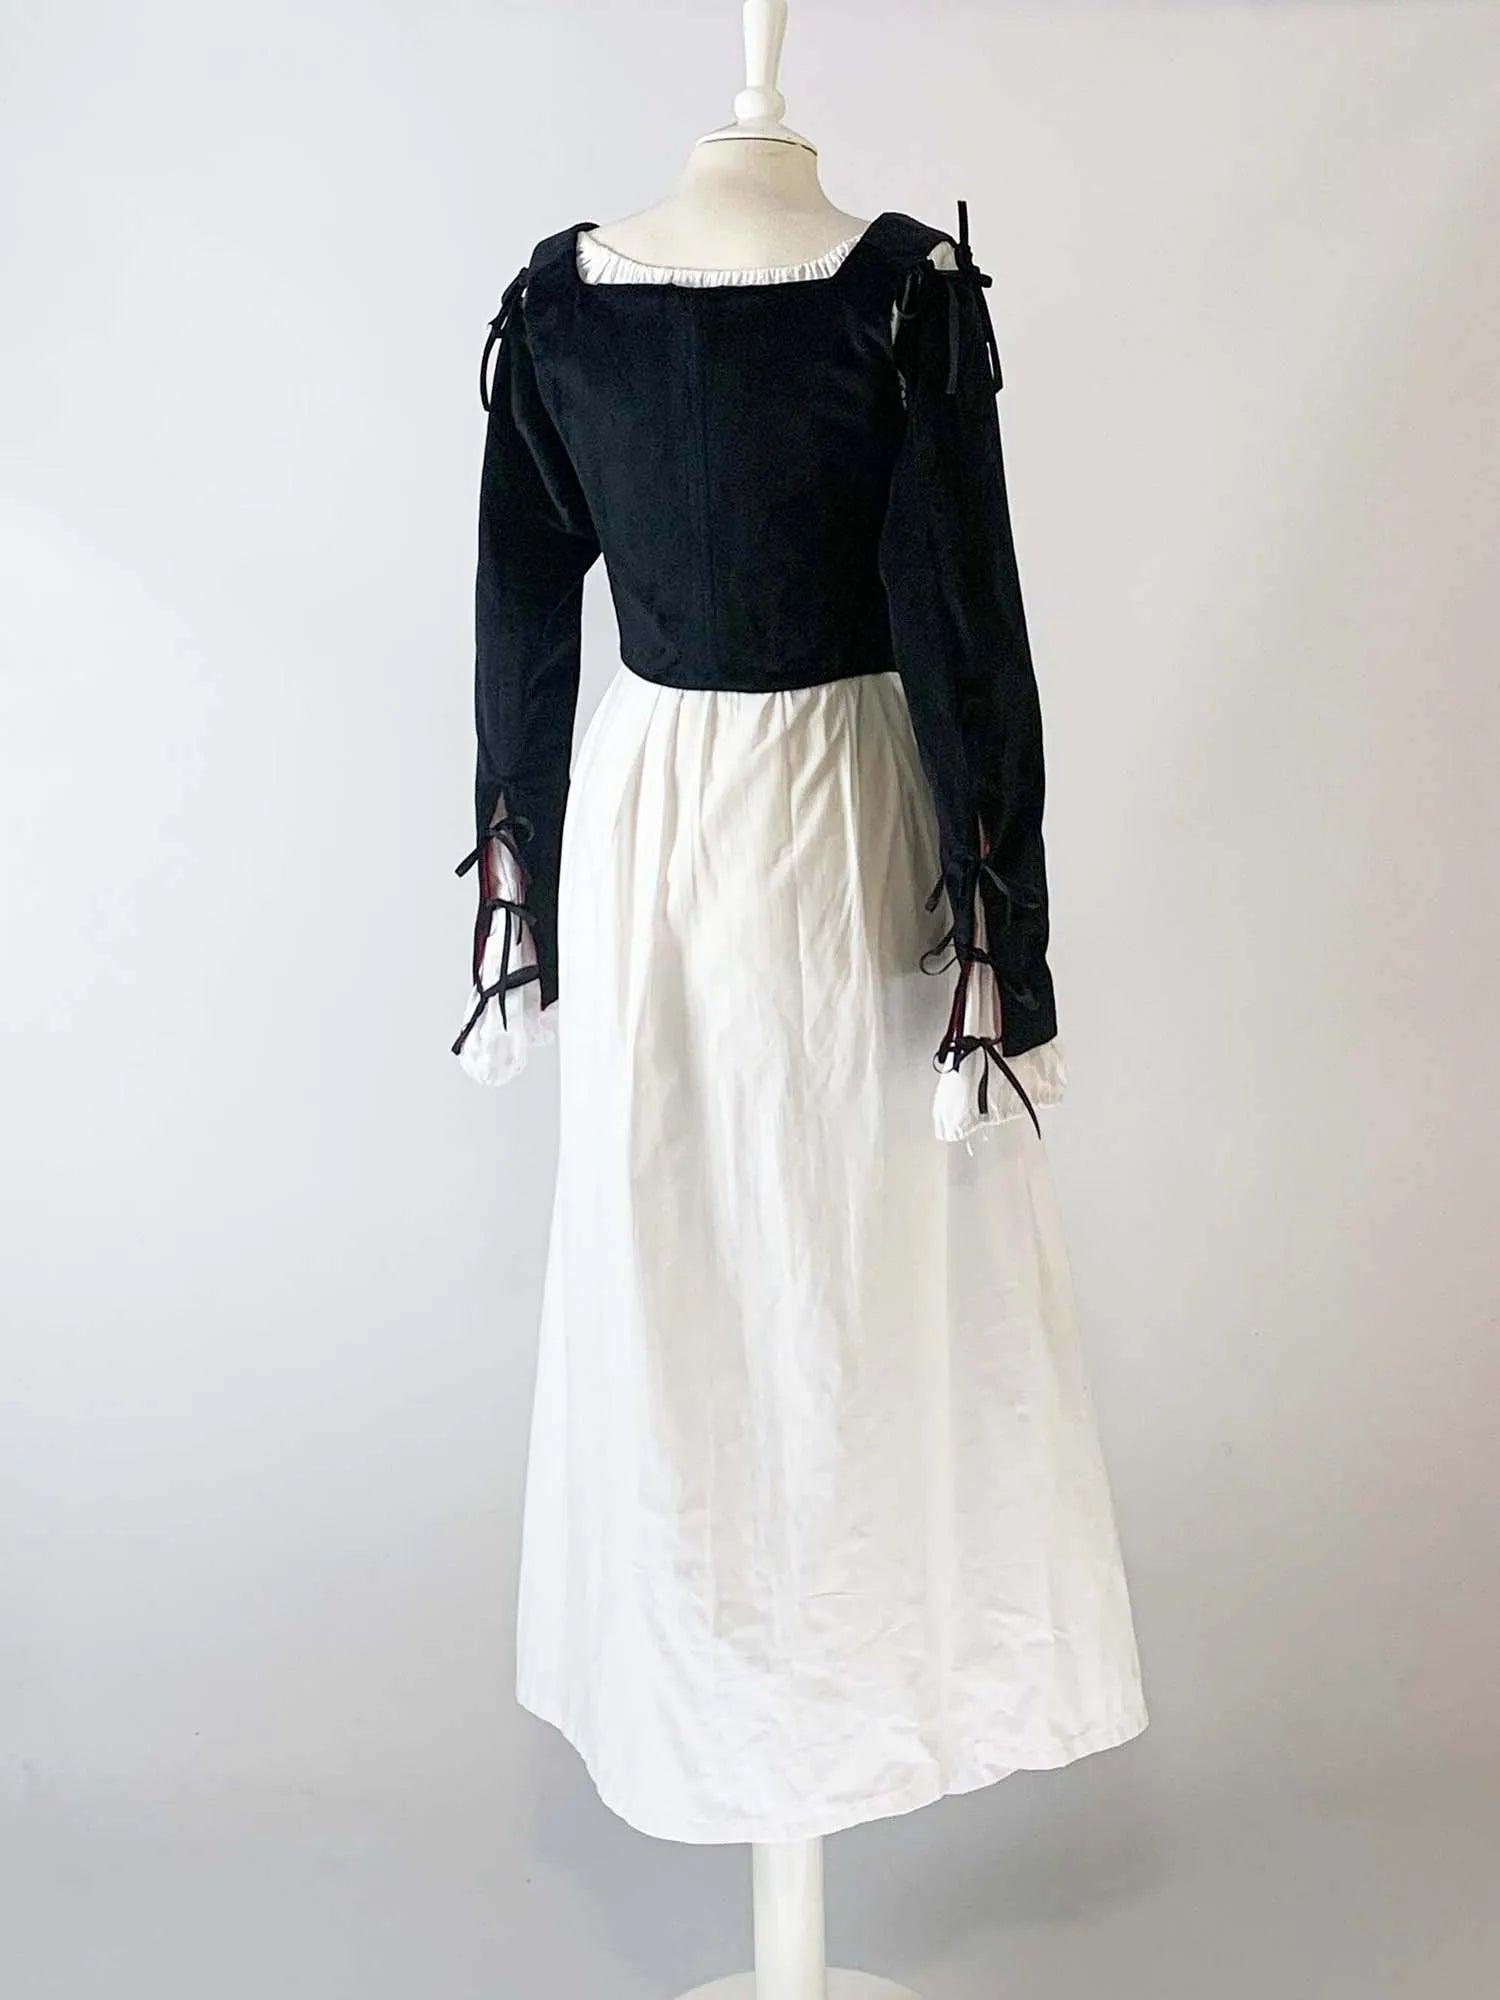 ANN, Renaissance Corset in Black Velvet with Removable Sleeves - Atelier Serraspina